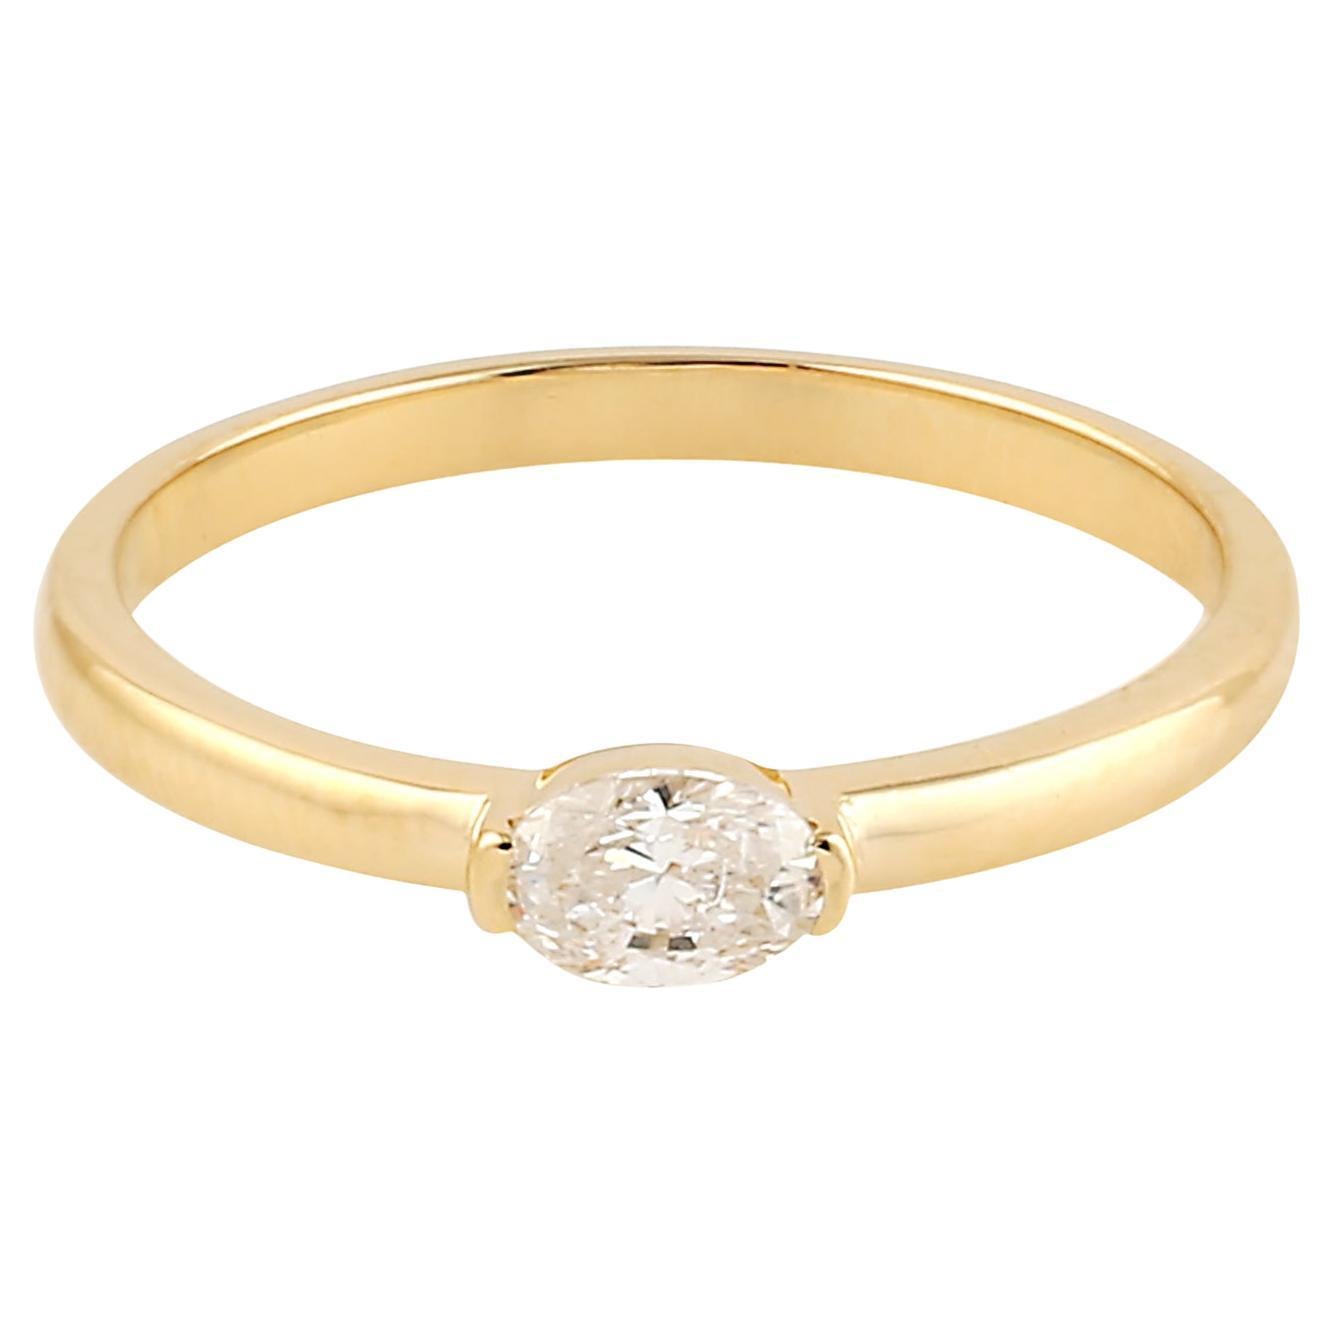 Ovaler ovaler Ring mit Diamanten im Rosenschliff aus 18 Karat Gelbgold